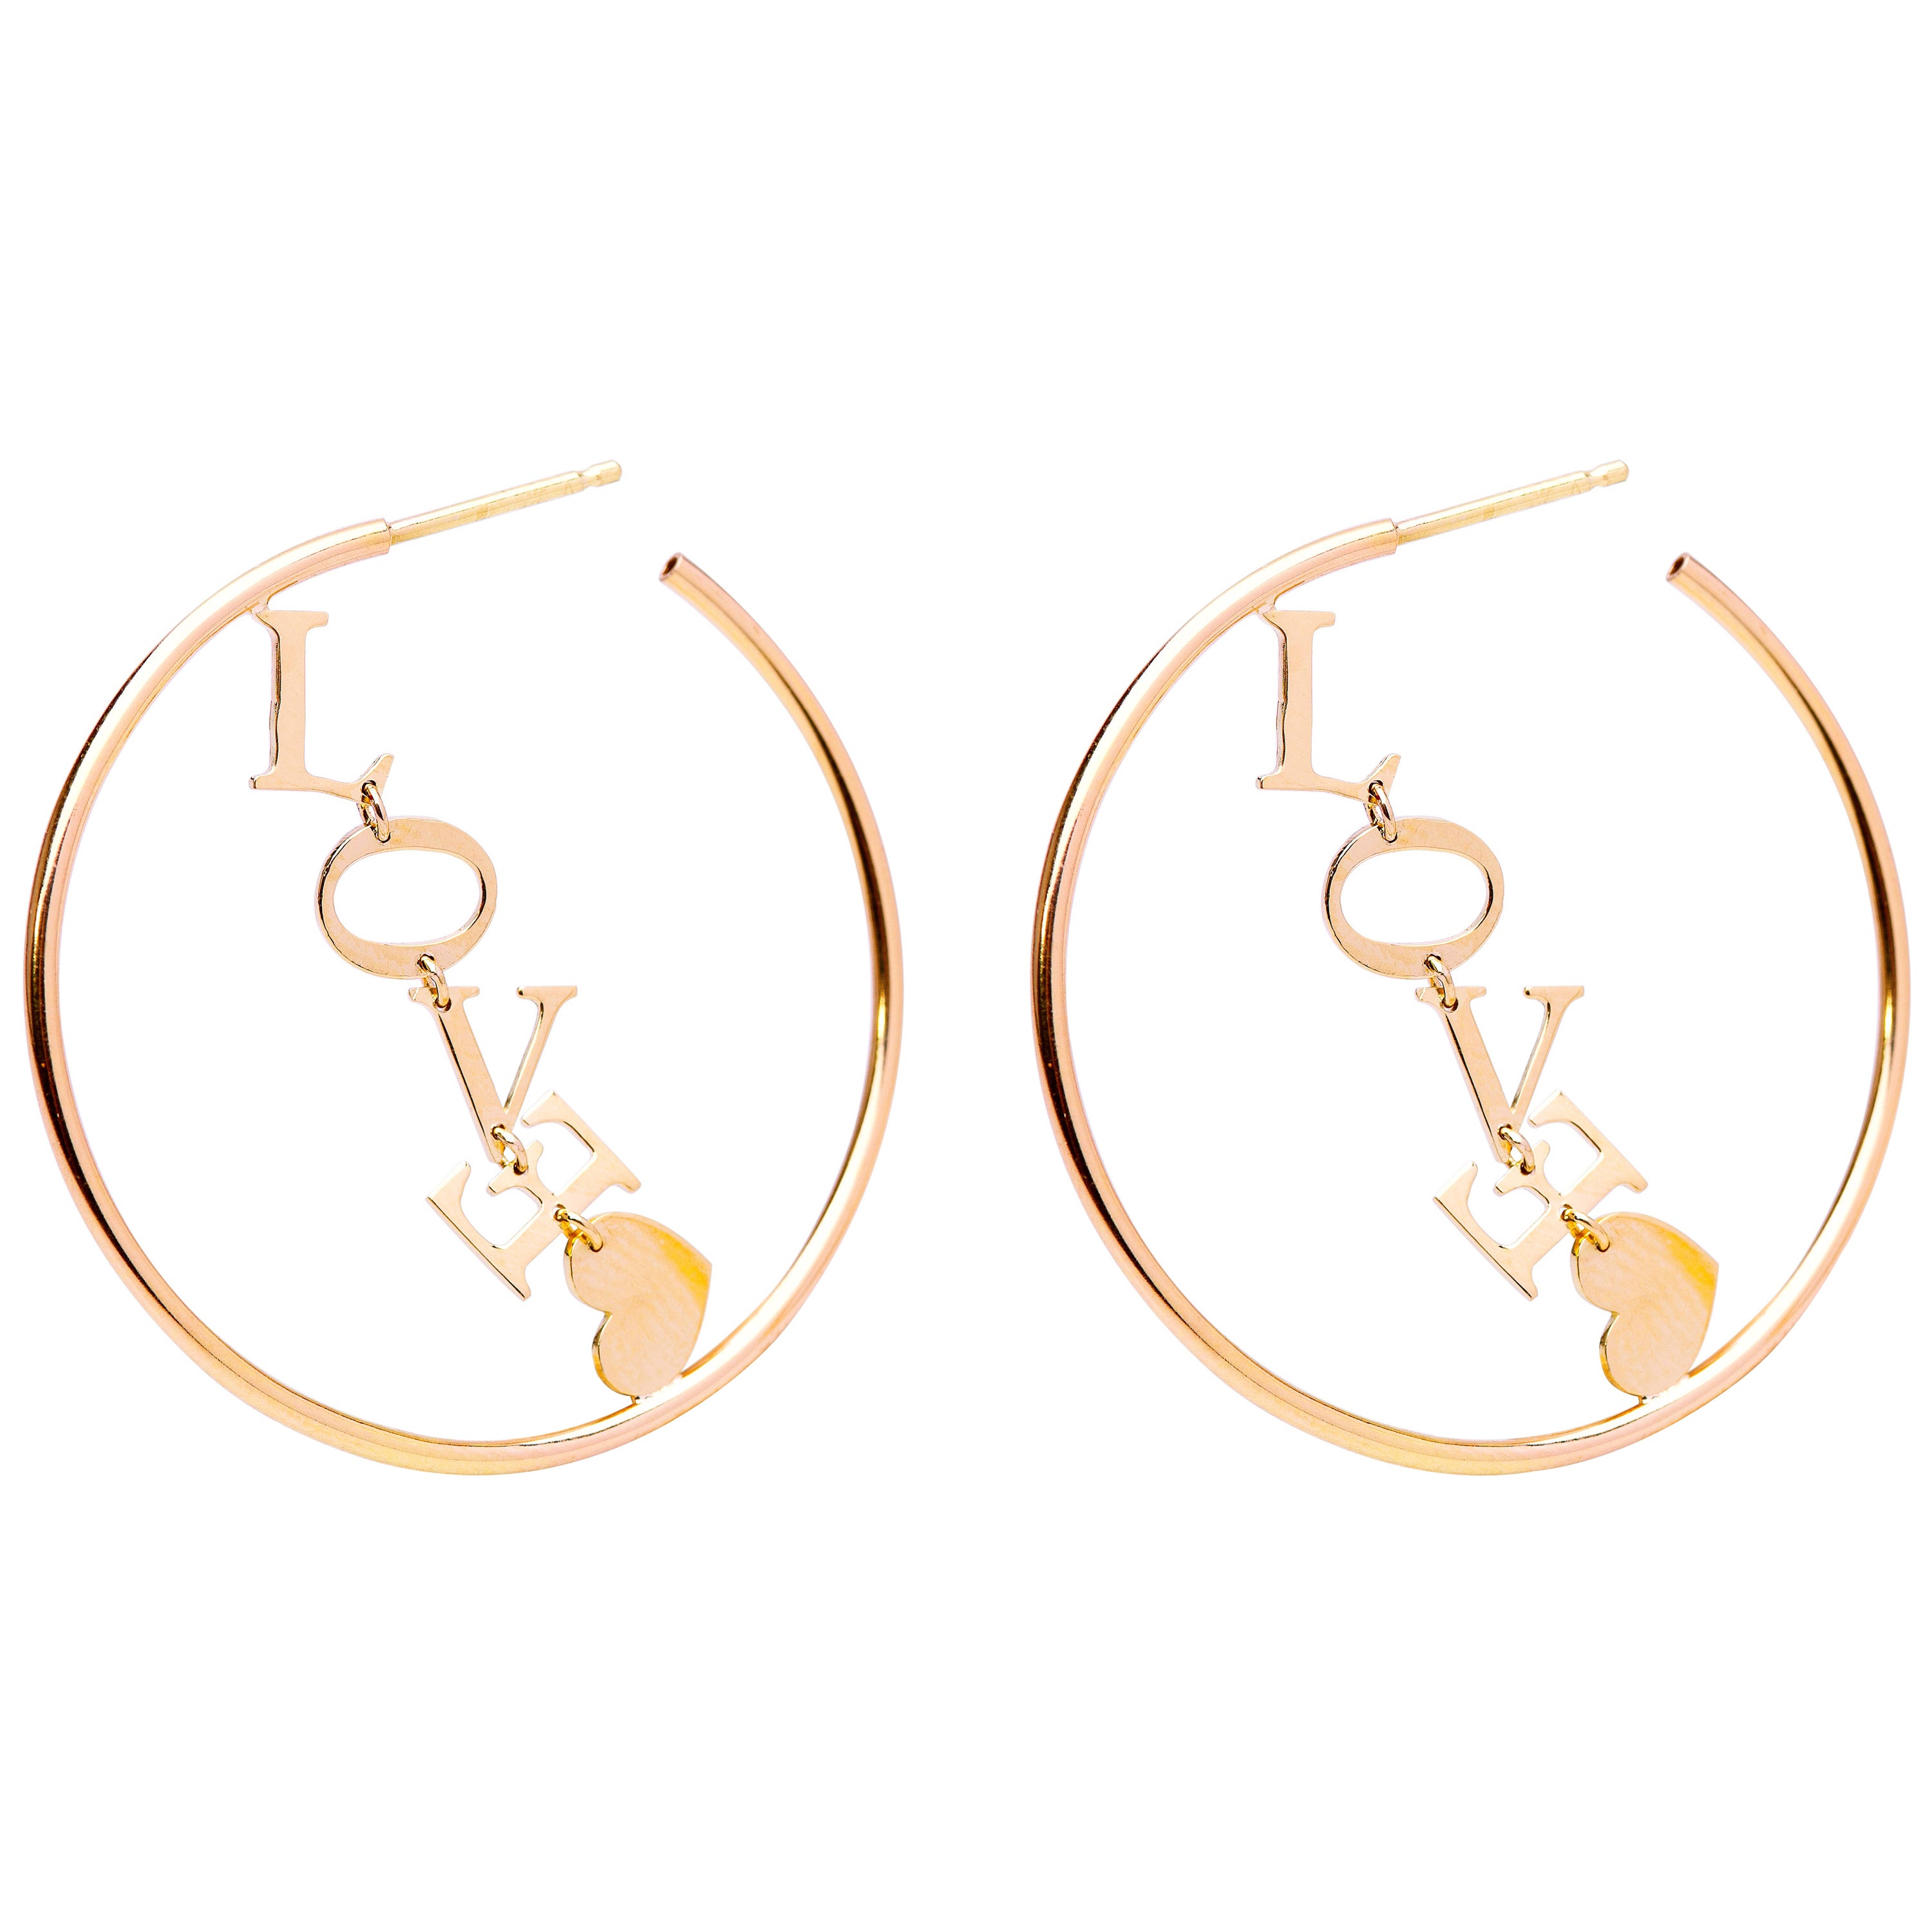 Ohrringe mit Kreisen aus 18 Karat Gelbgold mit Buchstaben und handgefertigtem Design